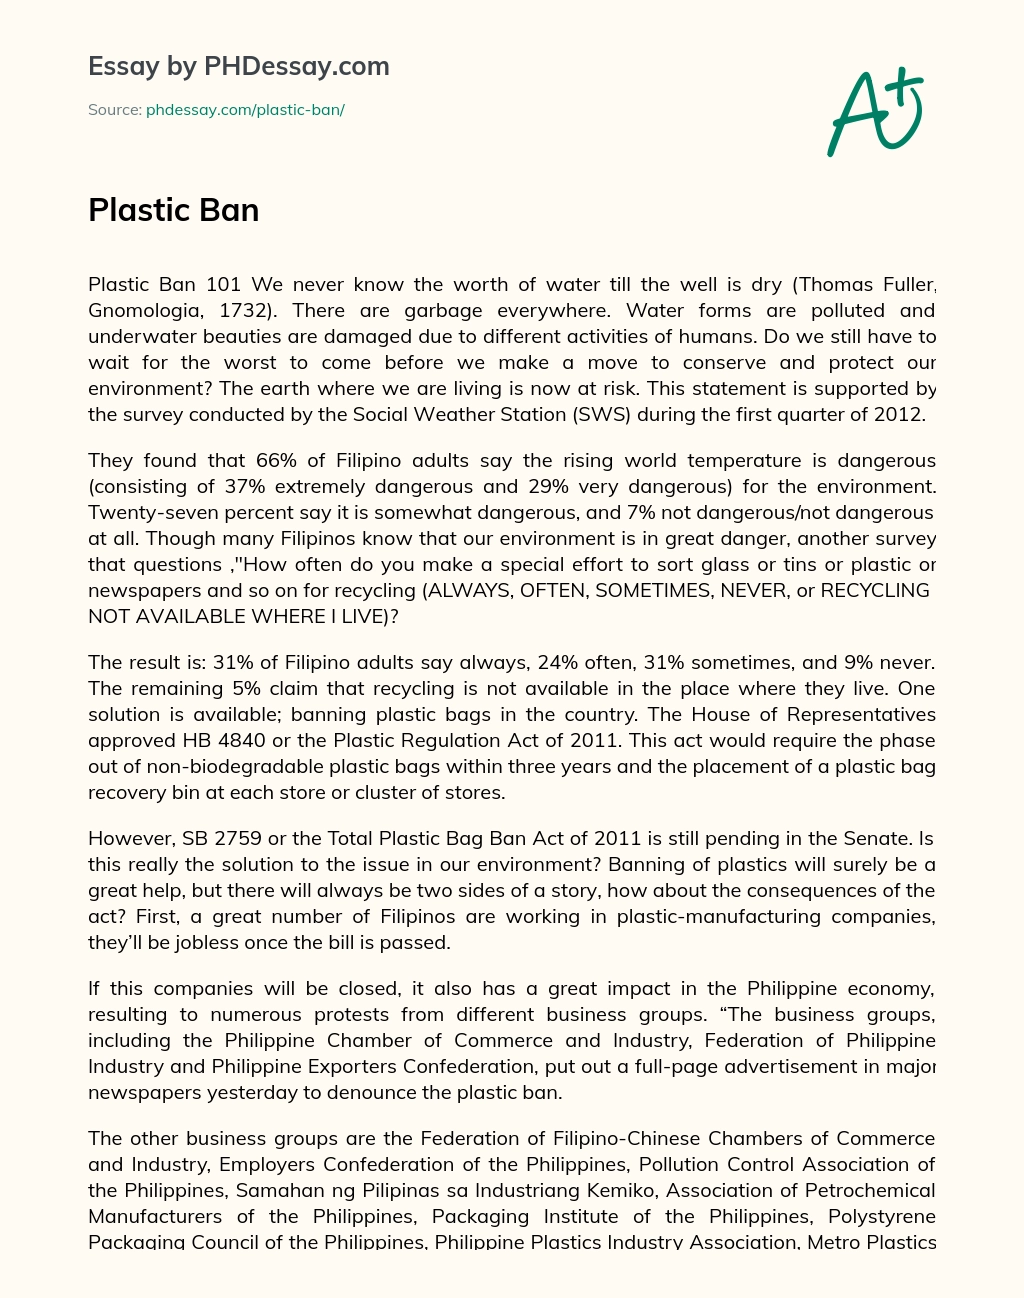 Plastic Ban essay